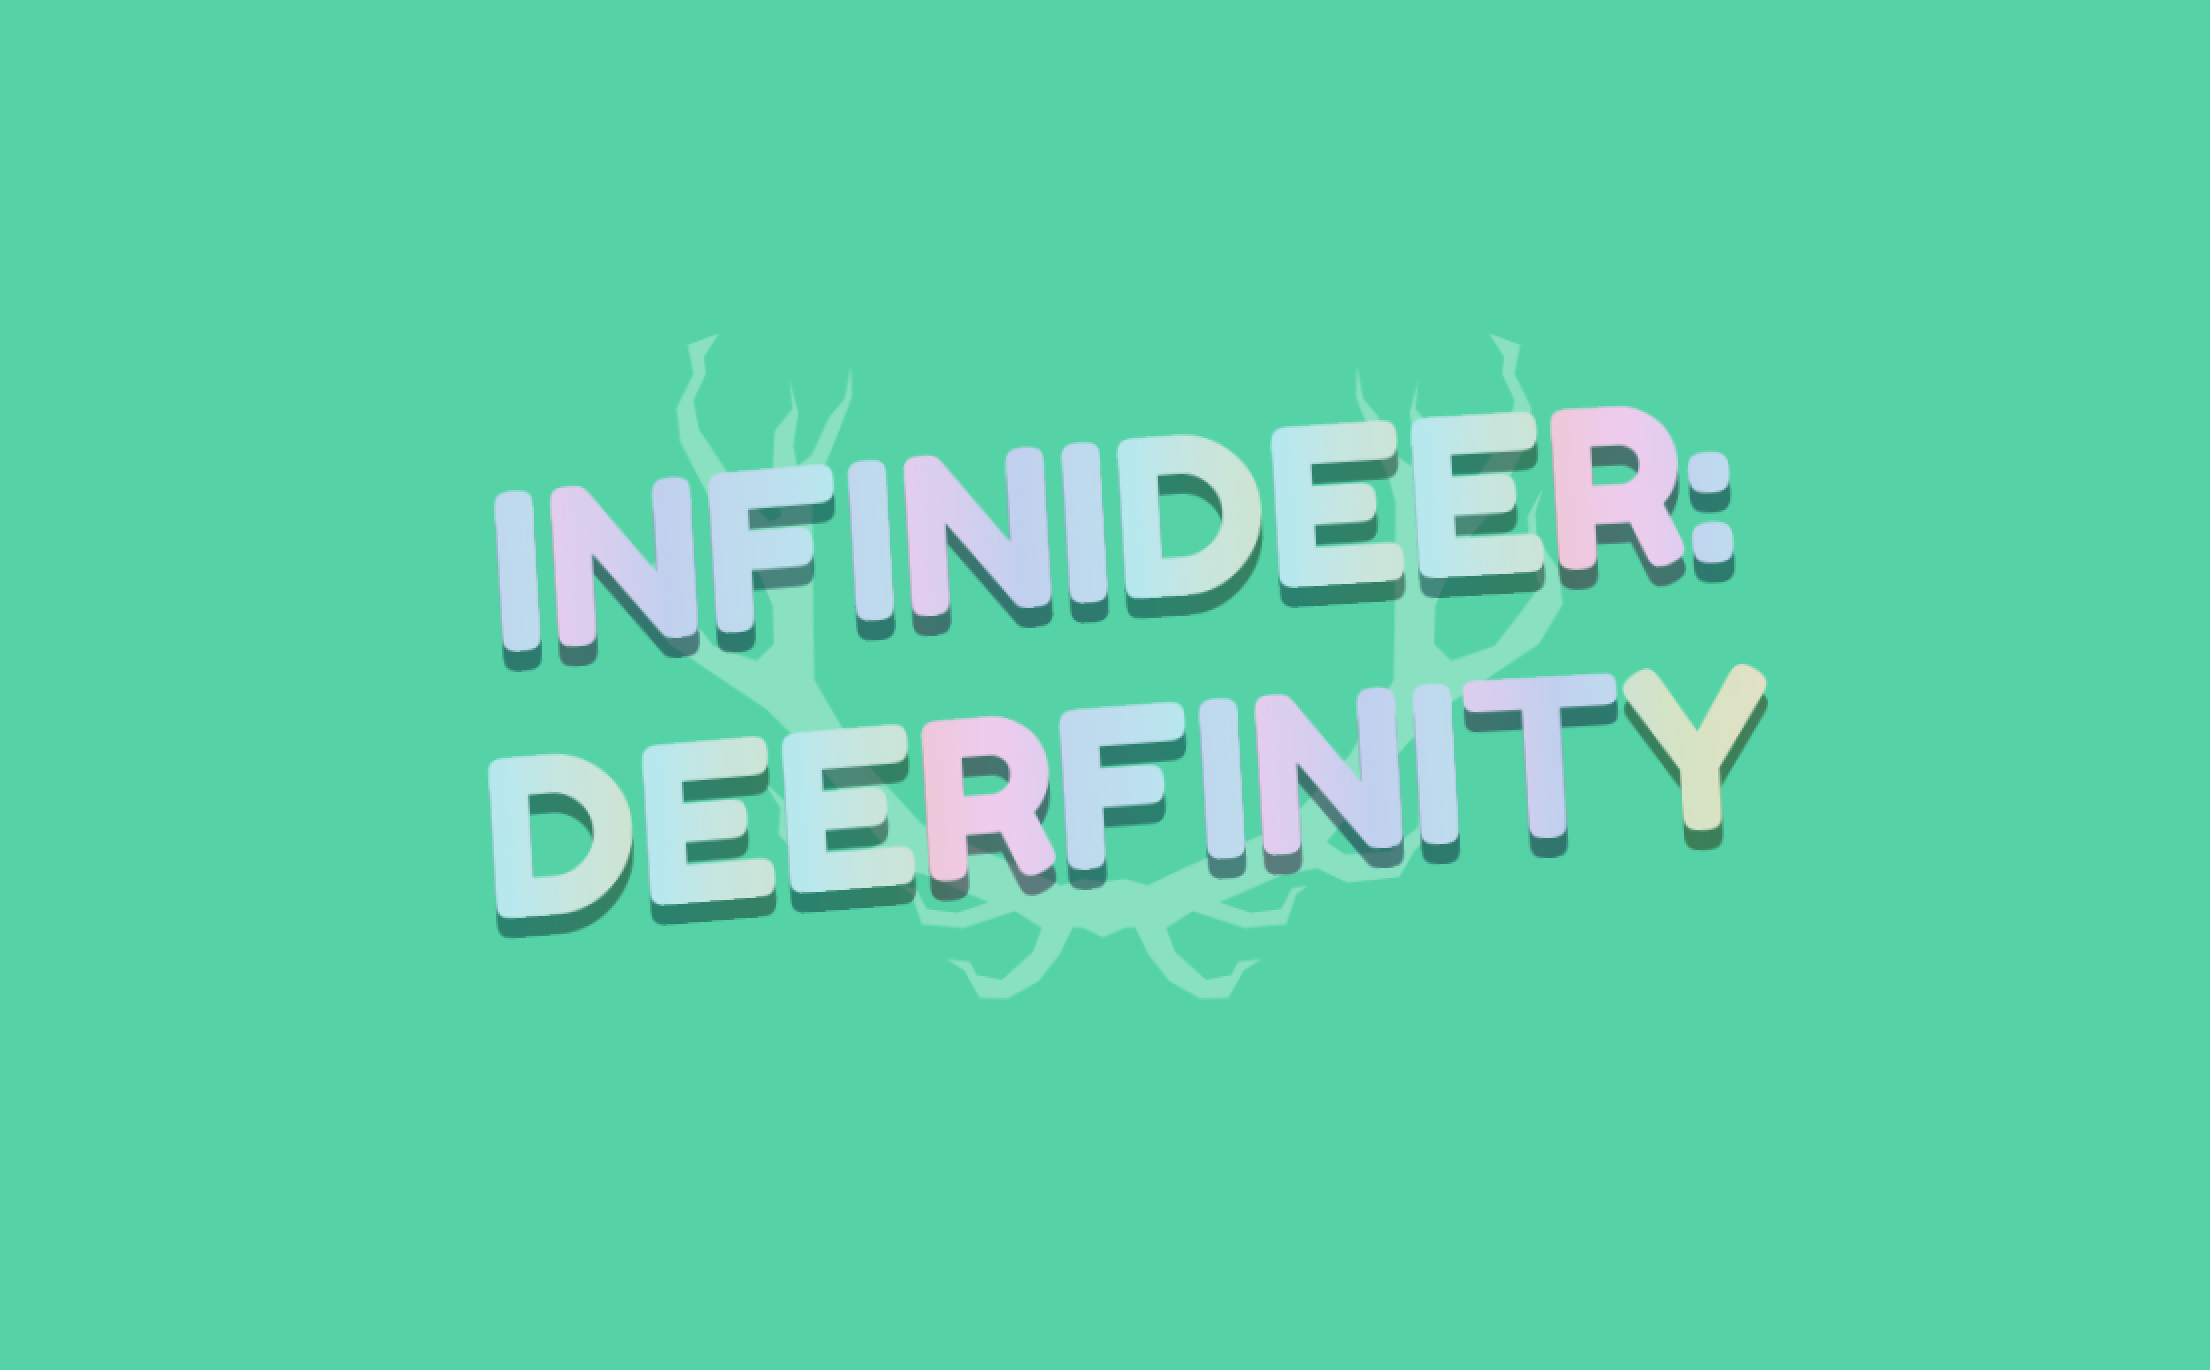 Infinideer: Deerfinity